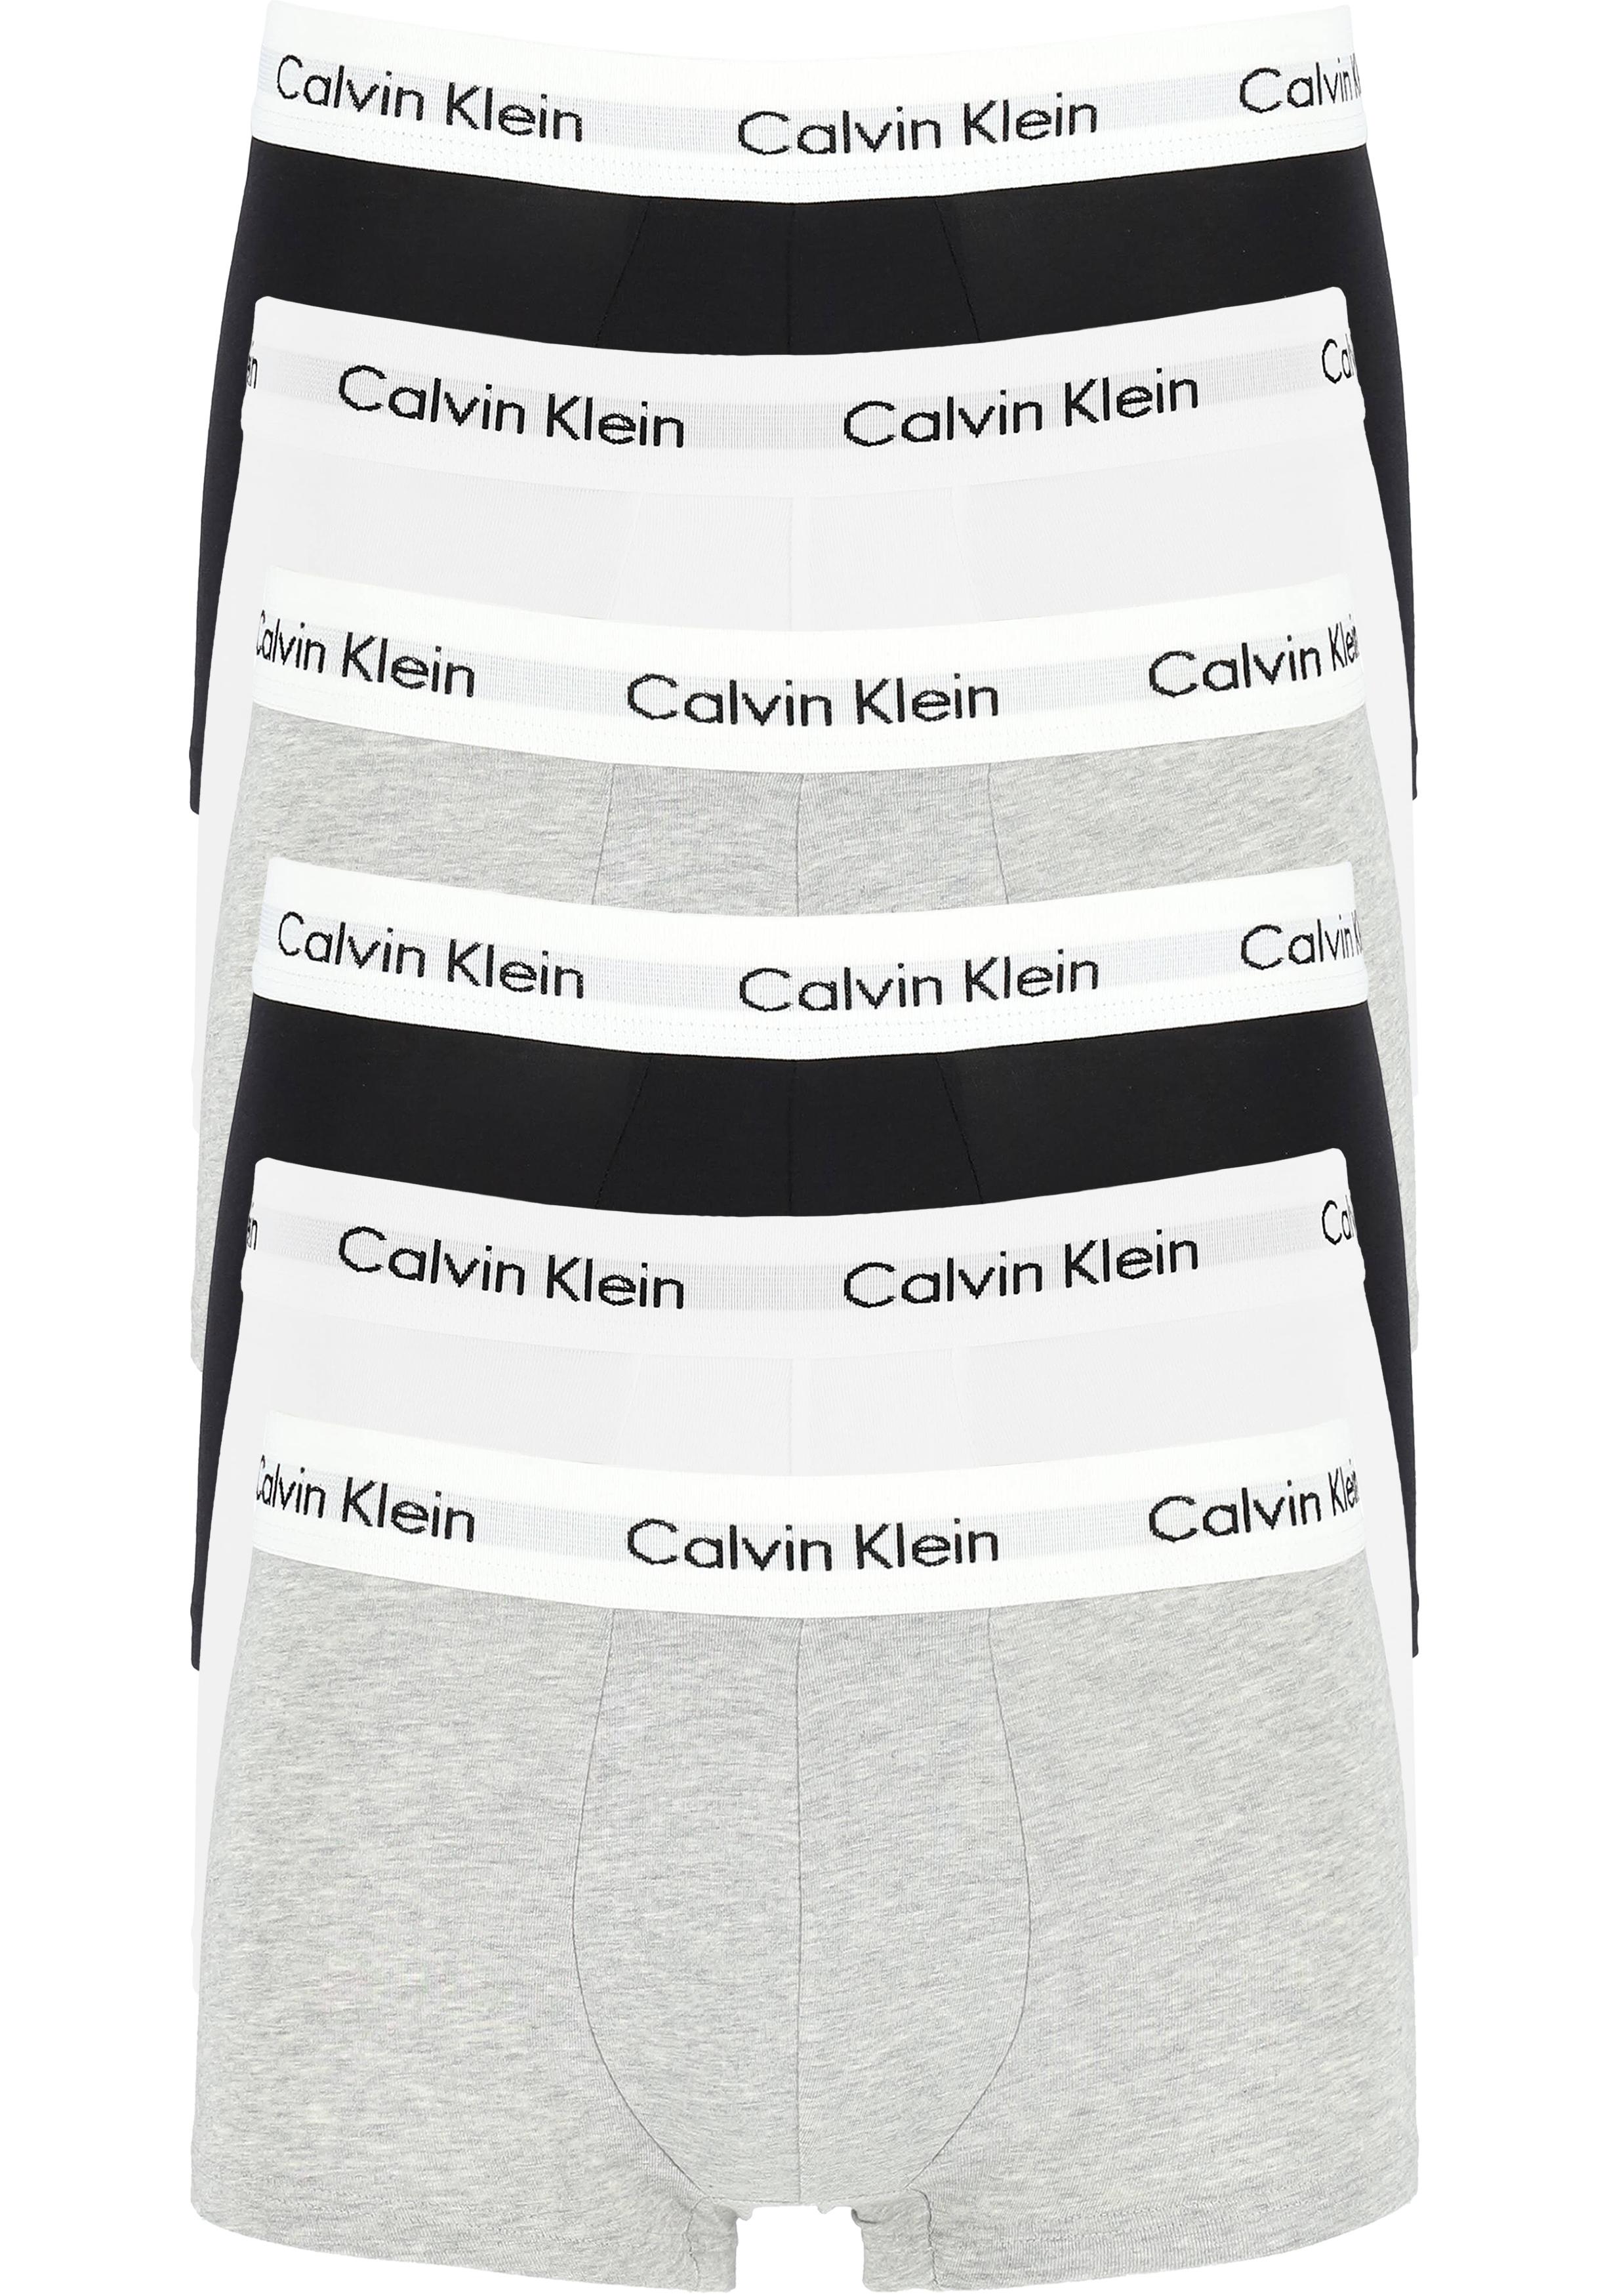 Actie 6-pack: Calvin Klein low rise trunks, lage heren boxers kort,... 20% Paaskorting op (bijna) alles